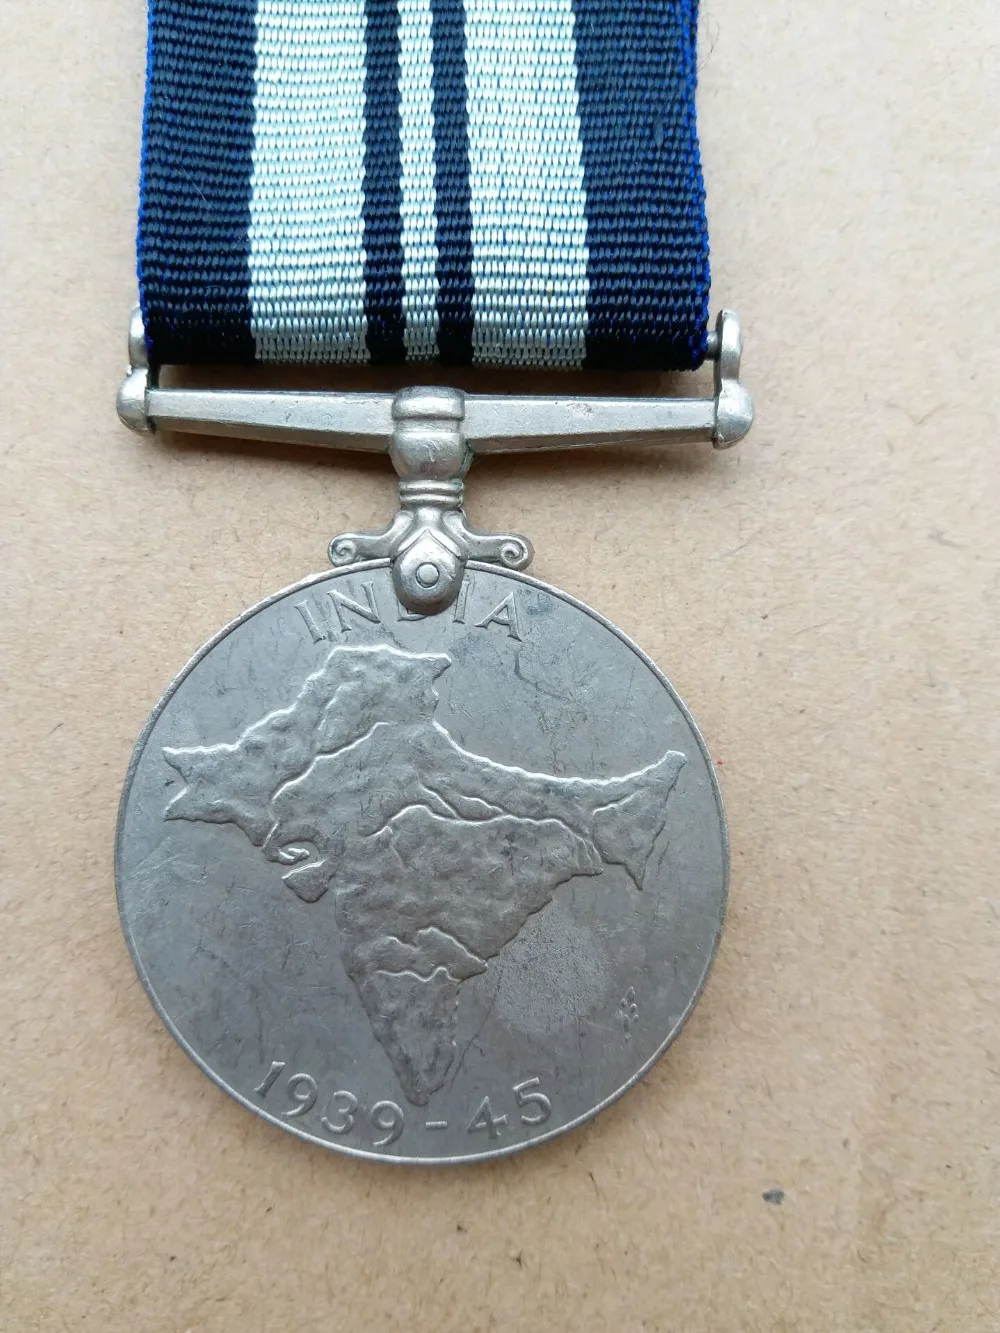 Великобритания 1939-1945 медаль, настоящая комеморивная медаль, оригинальная коллекция